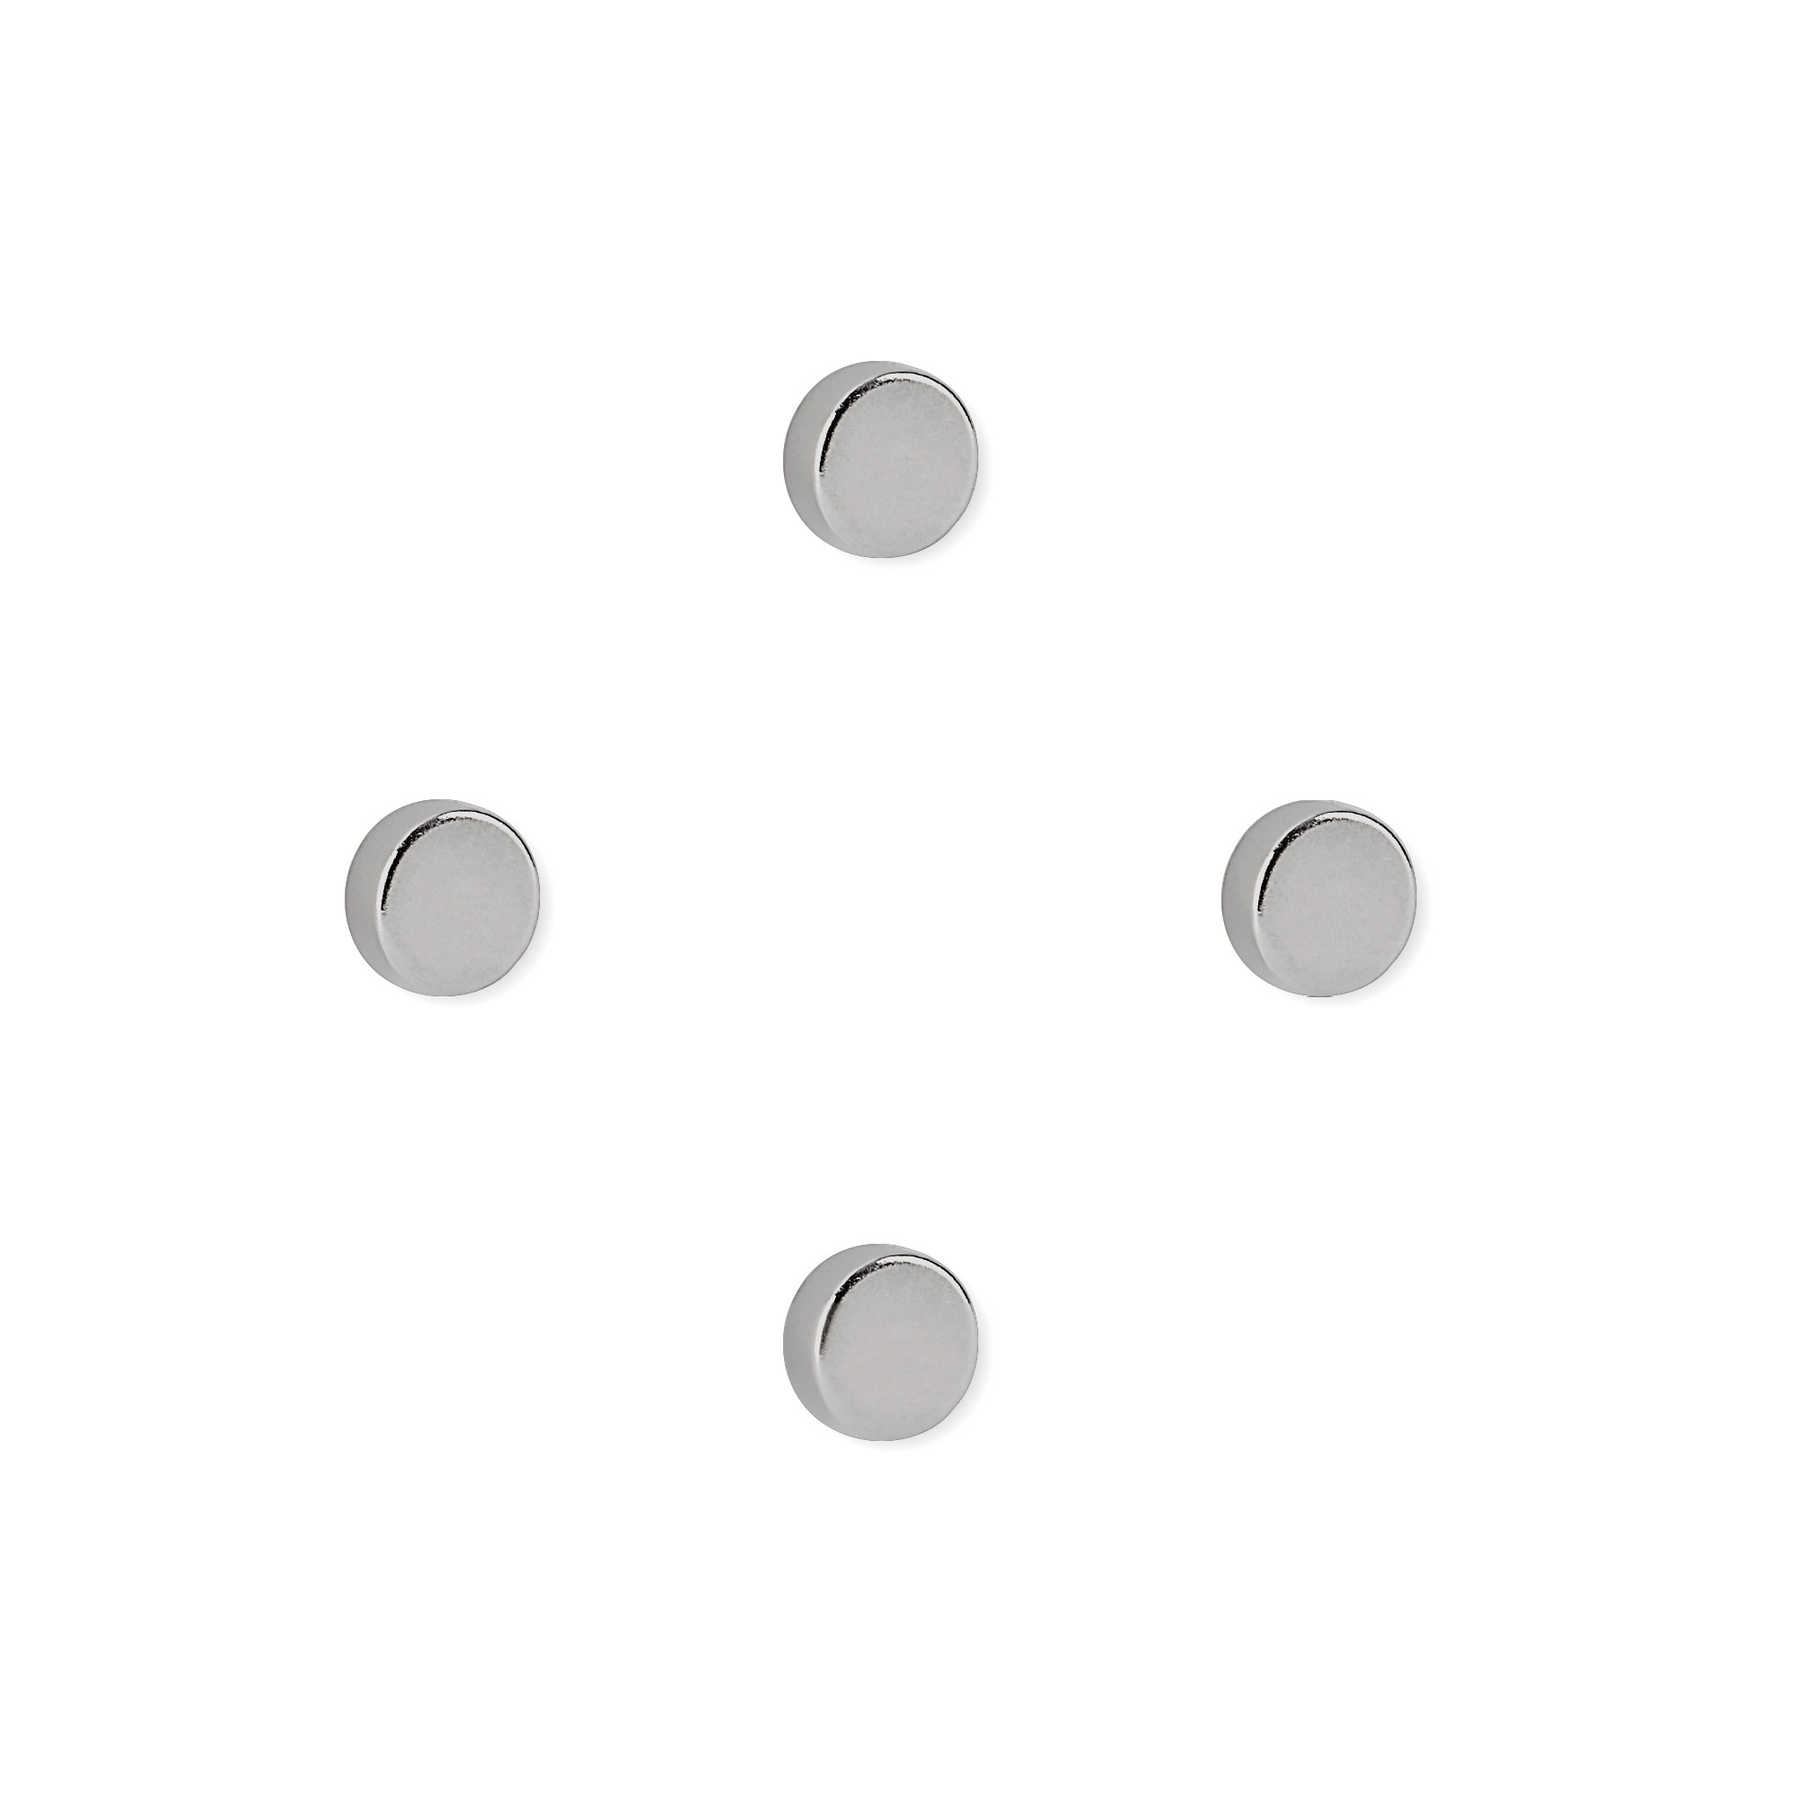         4er-Set runde Starkmagneten in 10 x 4 mm
    